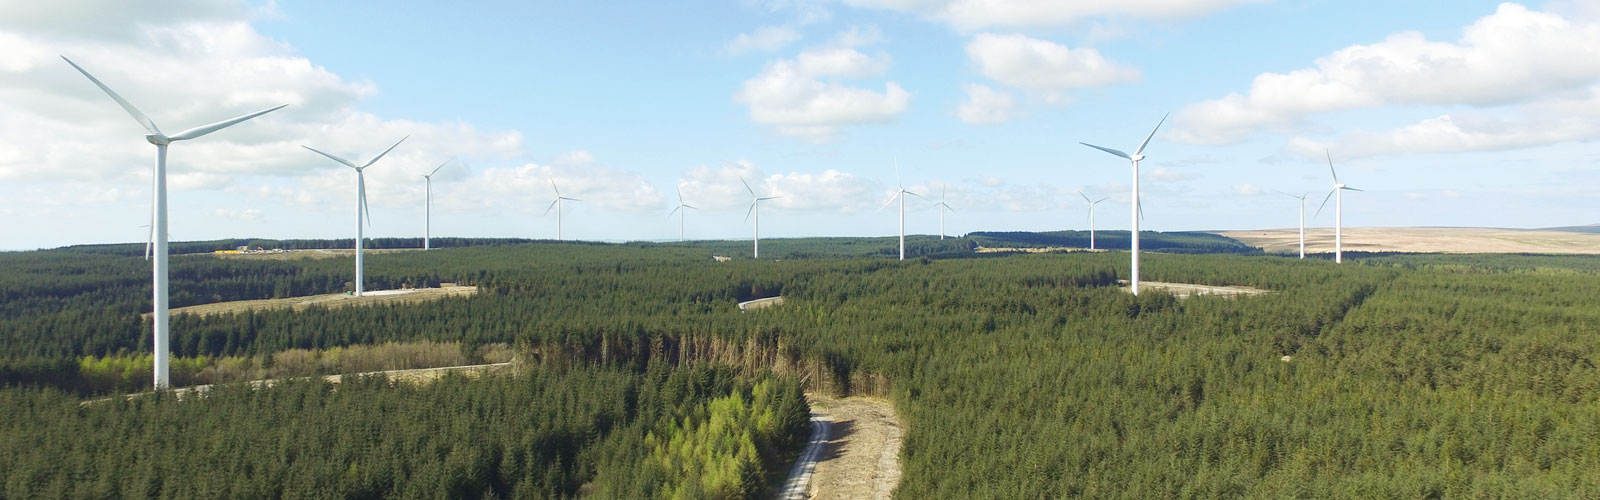 Wie entsteht ein Windpark im Wald | RWE